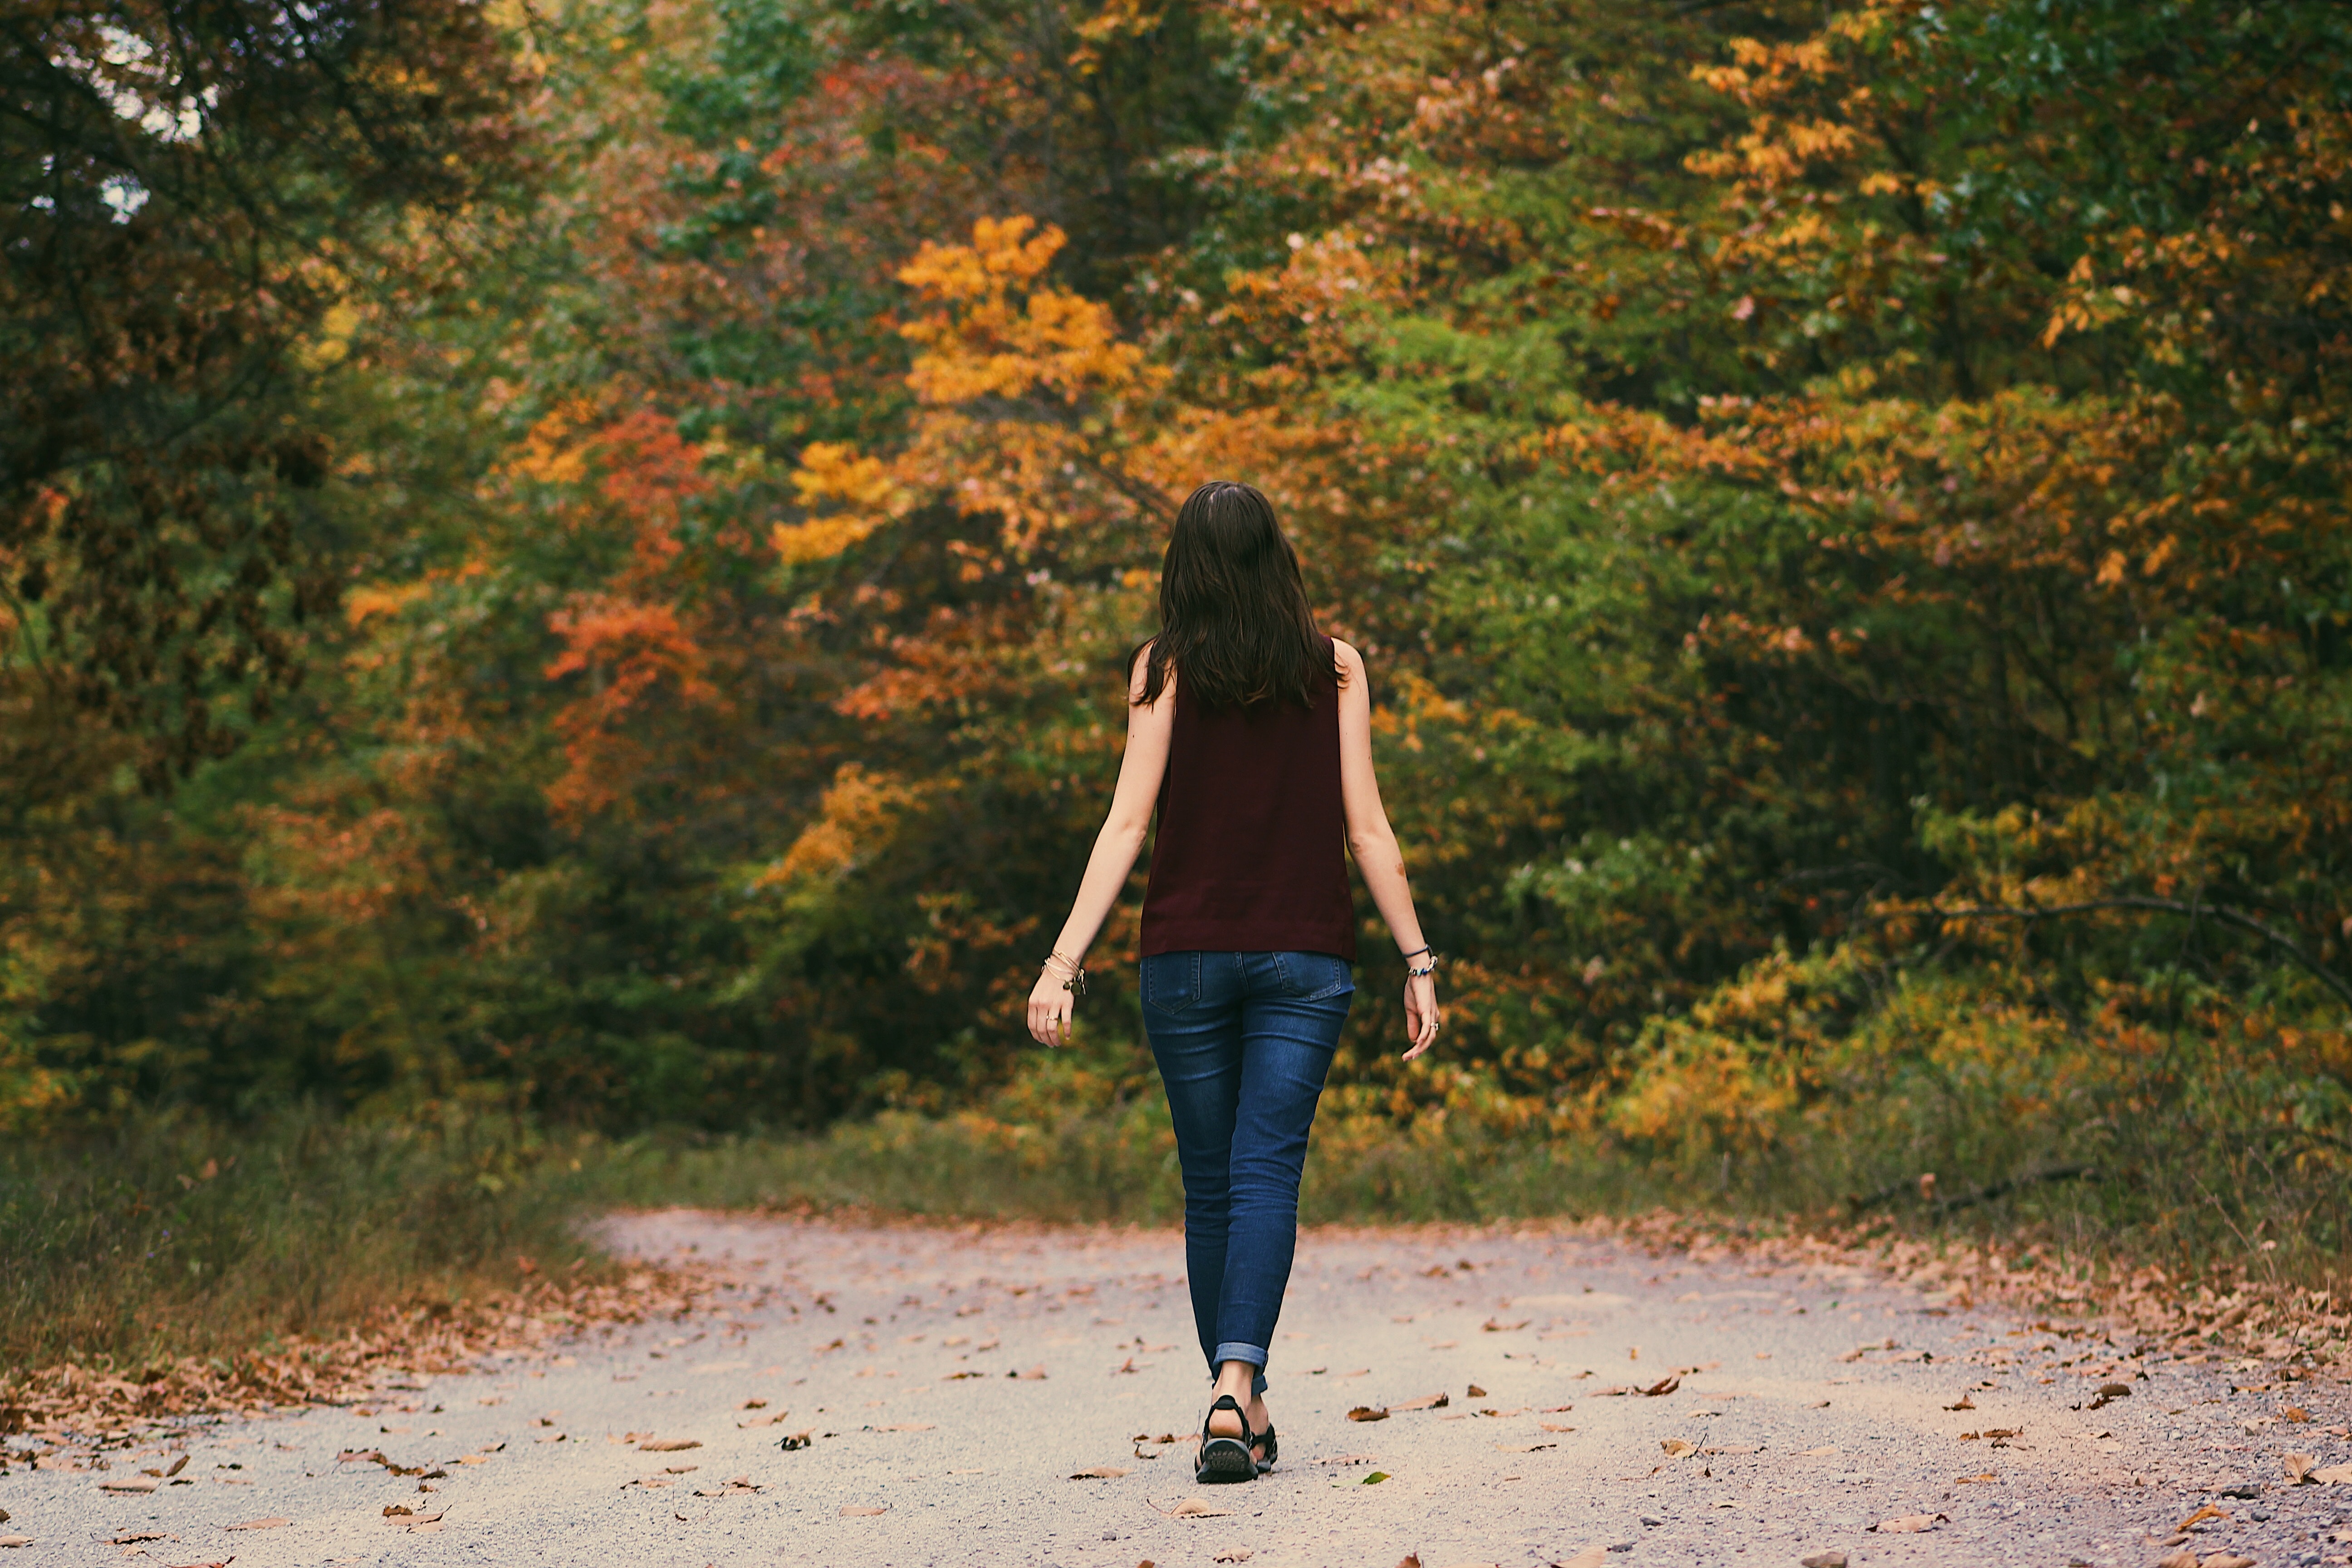 Femme de dos marchant sur un chemin dans la nature dans l'écoute de son environnement